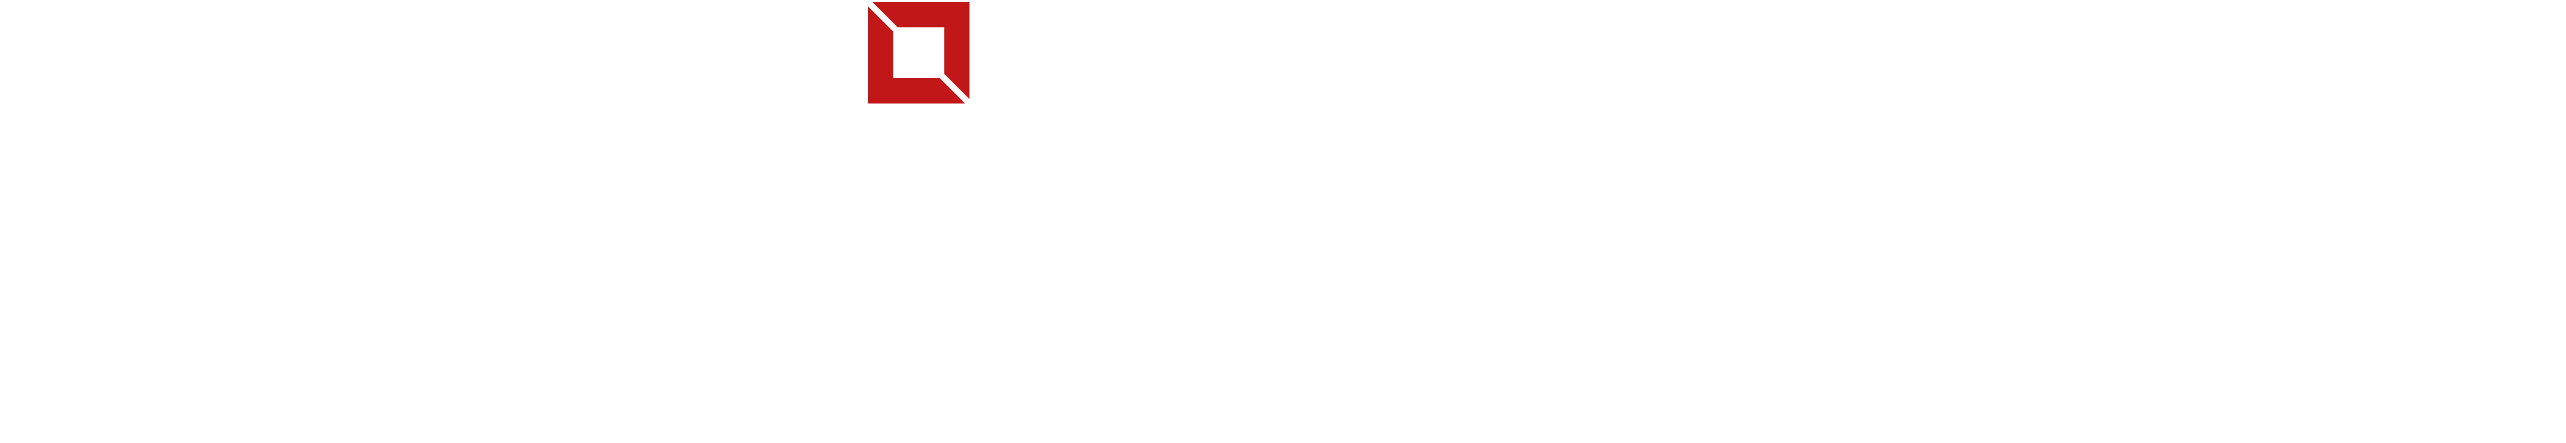 Logo ENICONS - Portal ENICONS